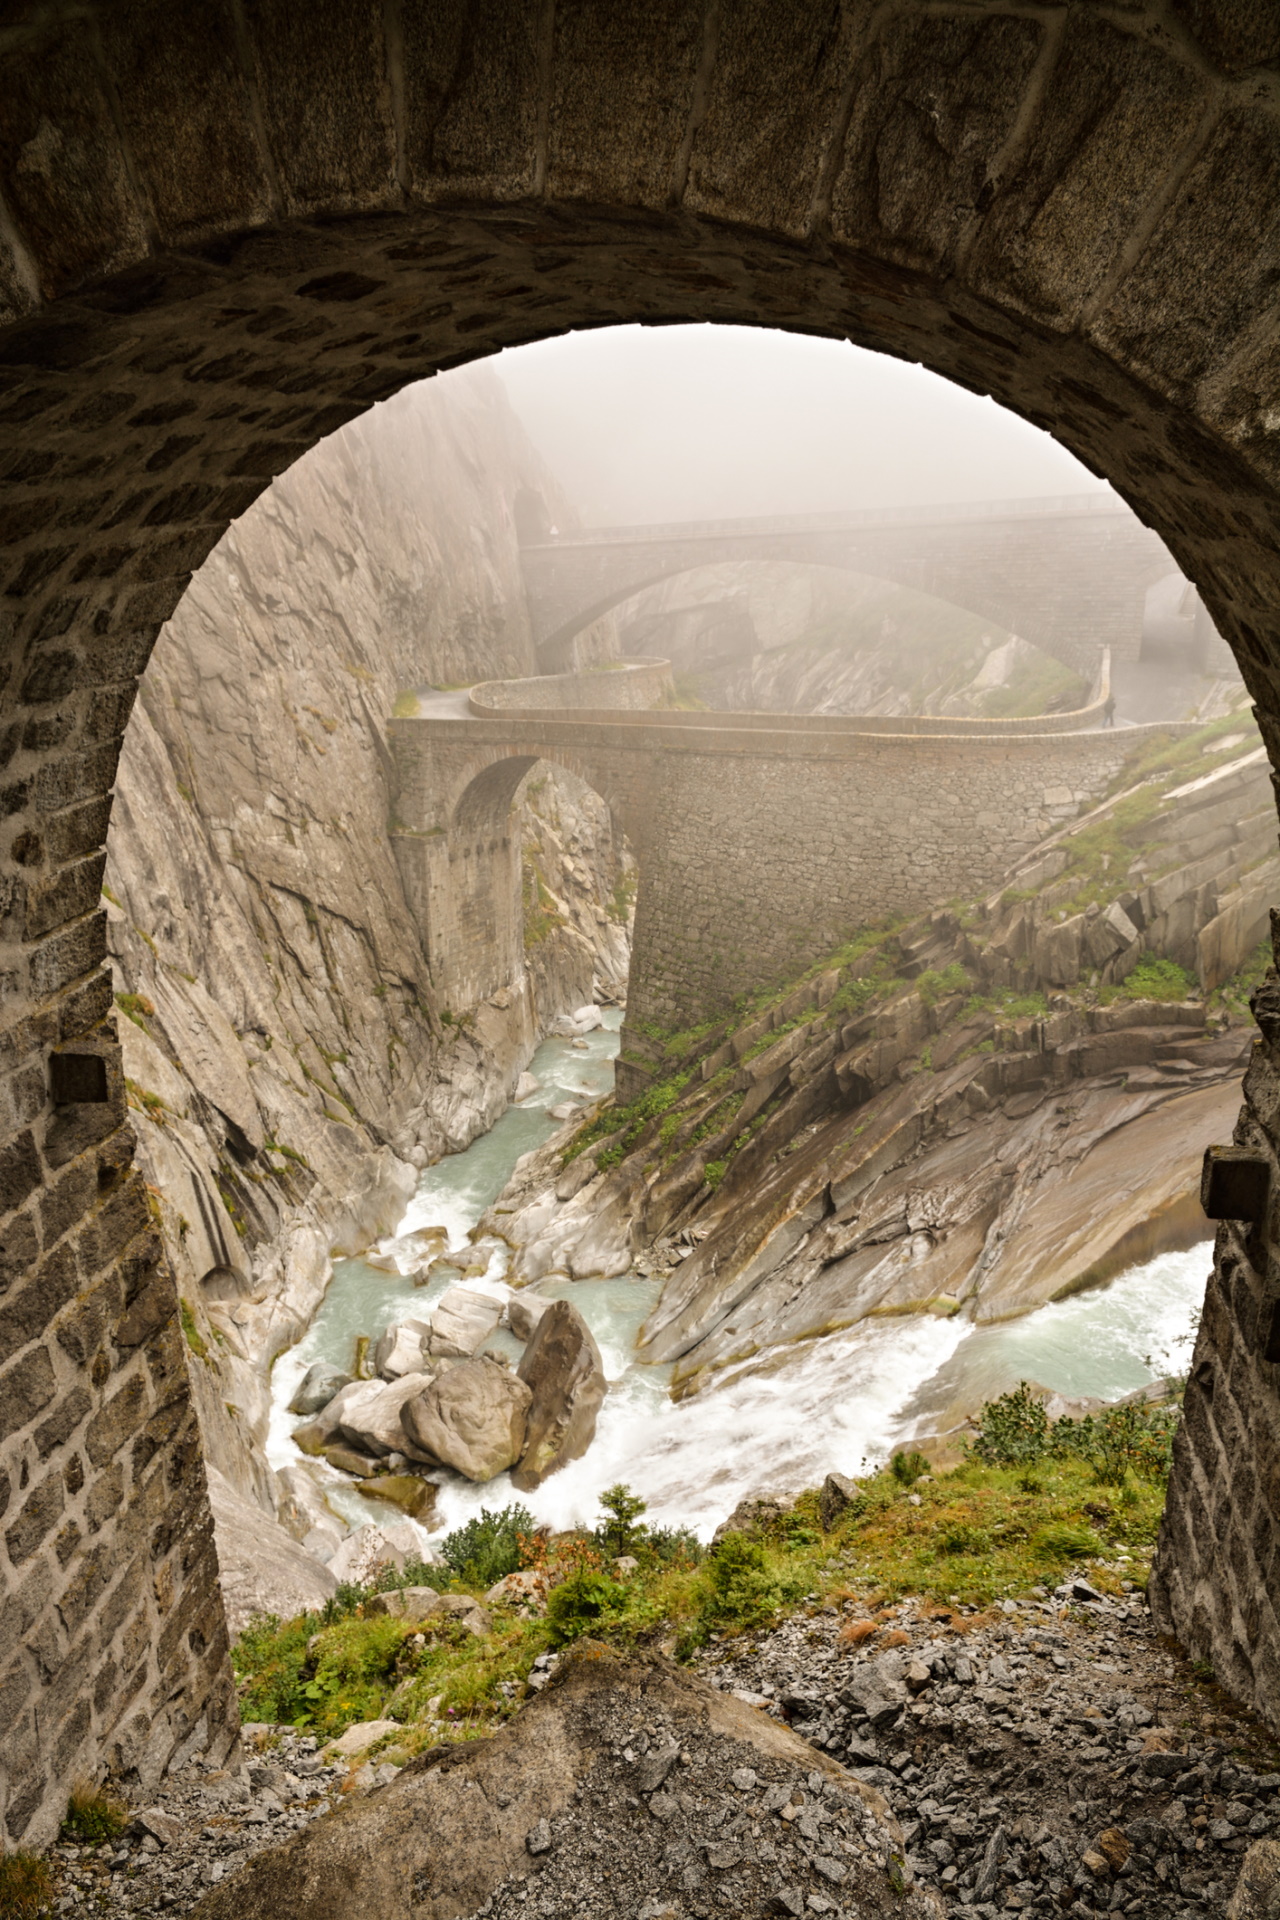 <p><strong>Дяволският мост в Швейцария</strong></p>

<p>Легендата зад Teufelsbr&uuml;cke (от немски &quot;Дяволския мост&quot;) твърди, че овчар се затруднявал да построи мост, затова се помолил на Дявола. Той се явил и построил моста при едно условие: душата на първия преминал моста да му принадлежи. Местните обаче решили да пратят коза, първа да пресече моста.</p>